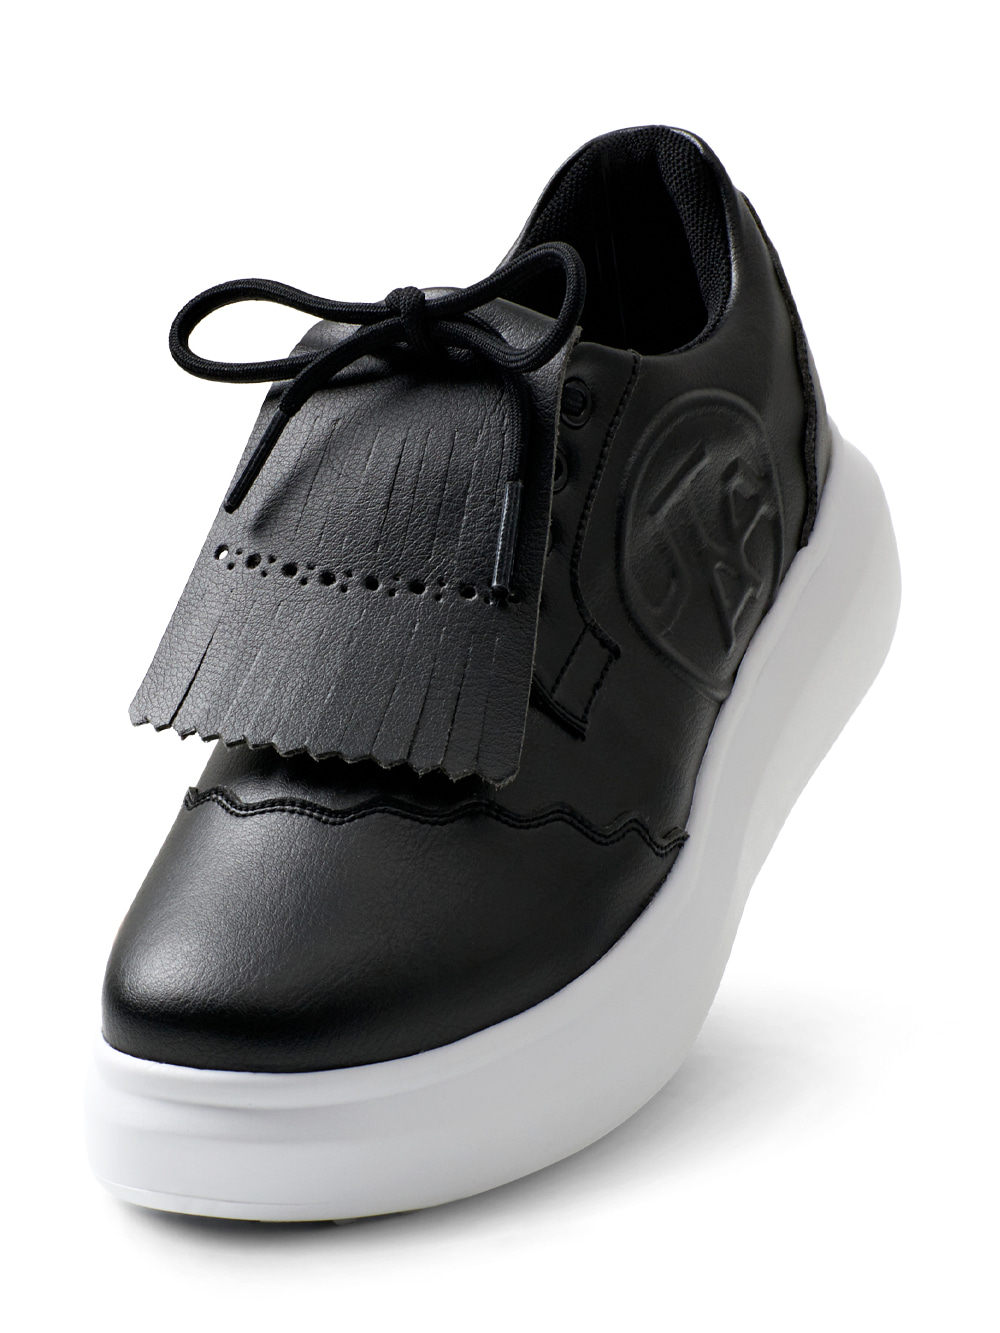 UTAA Derby Kiltie Golf Sneakers : Women&#039;s Black (UB0GHF101BK)